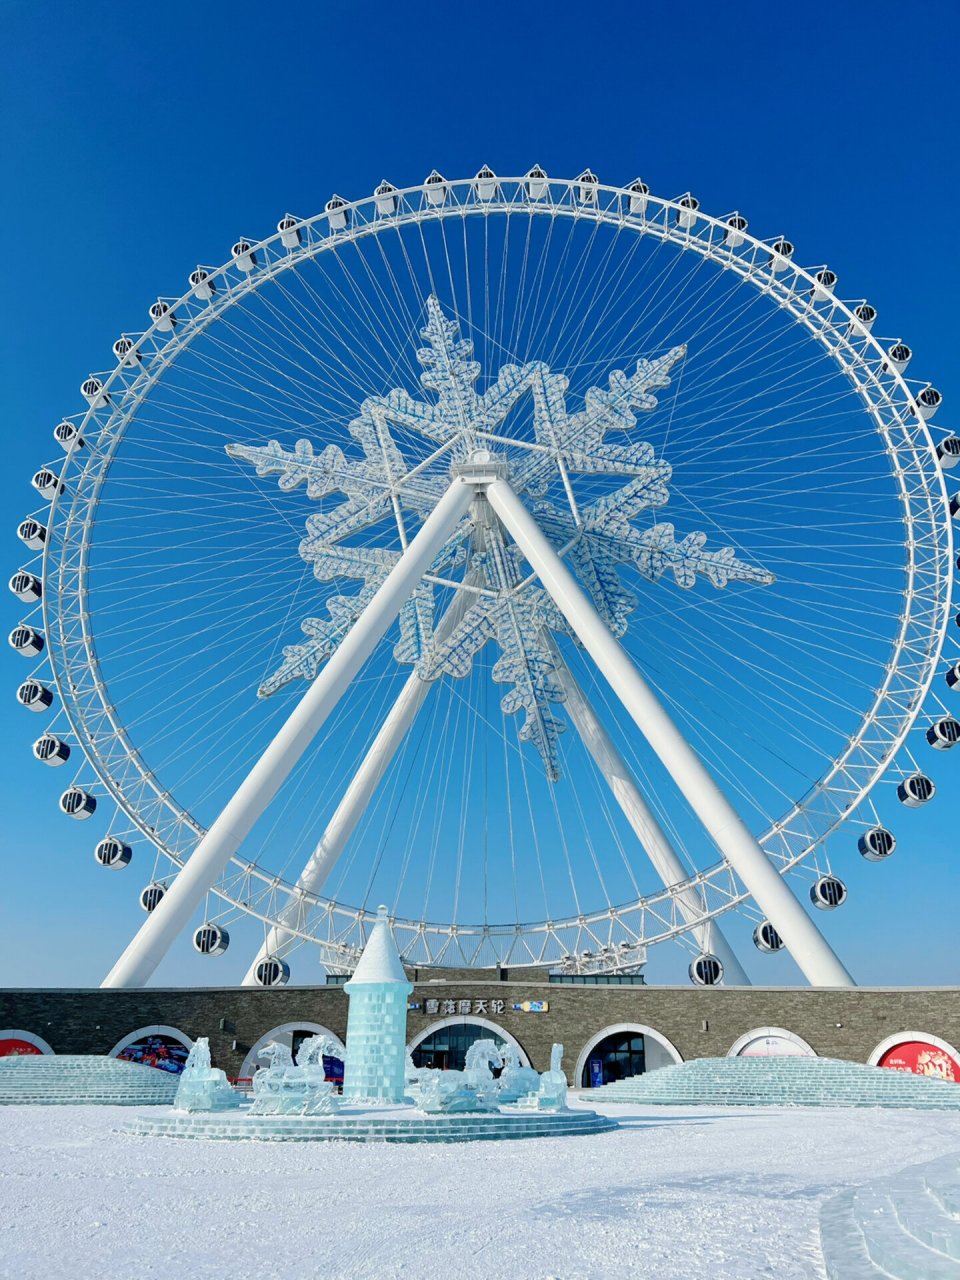 海口日月广场冰雪世界图片